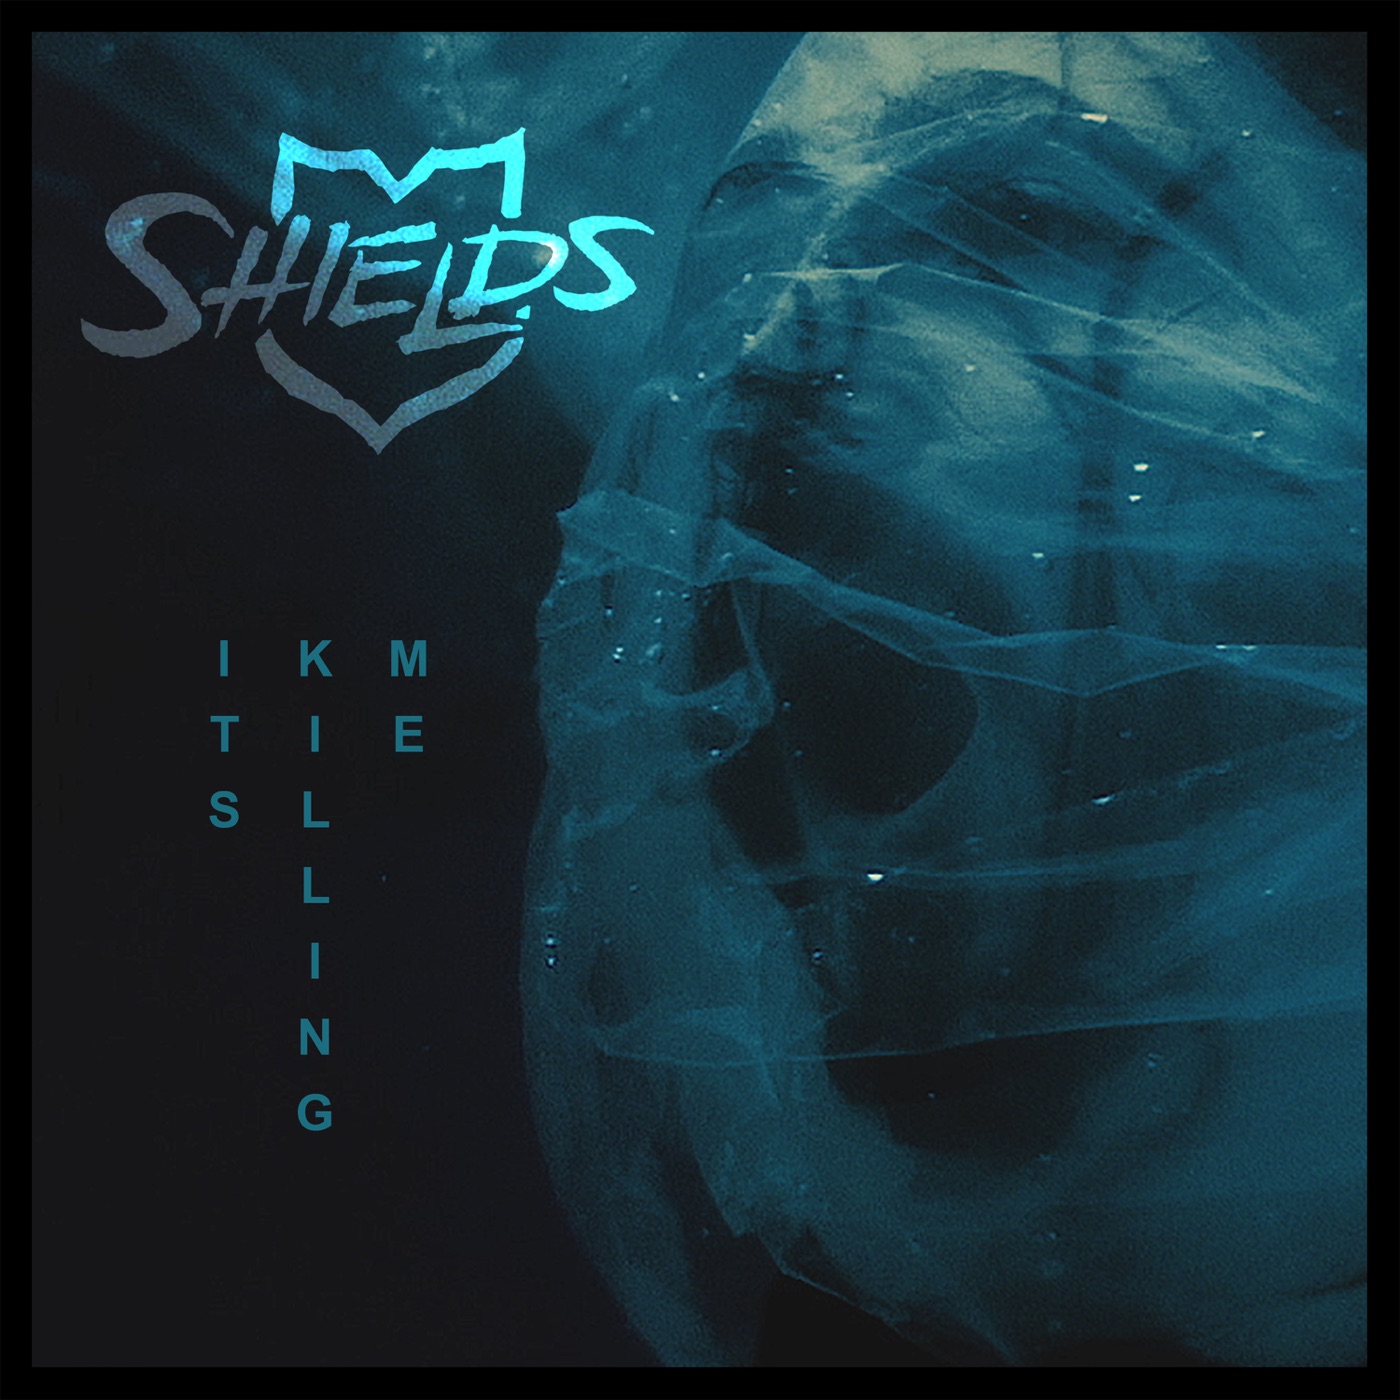 Shields - It's Killing Me [single] (2018)